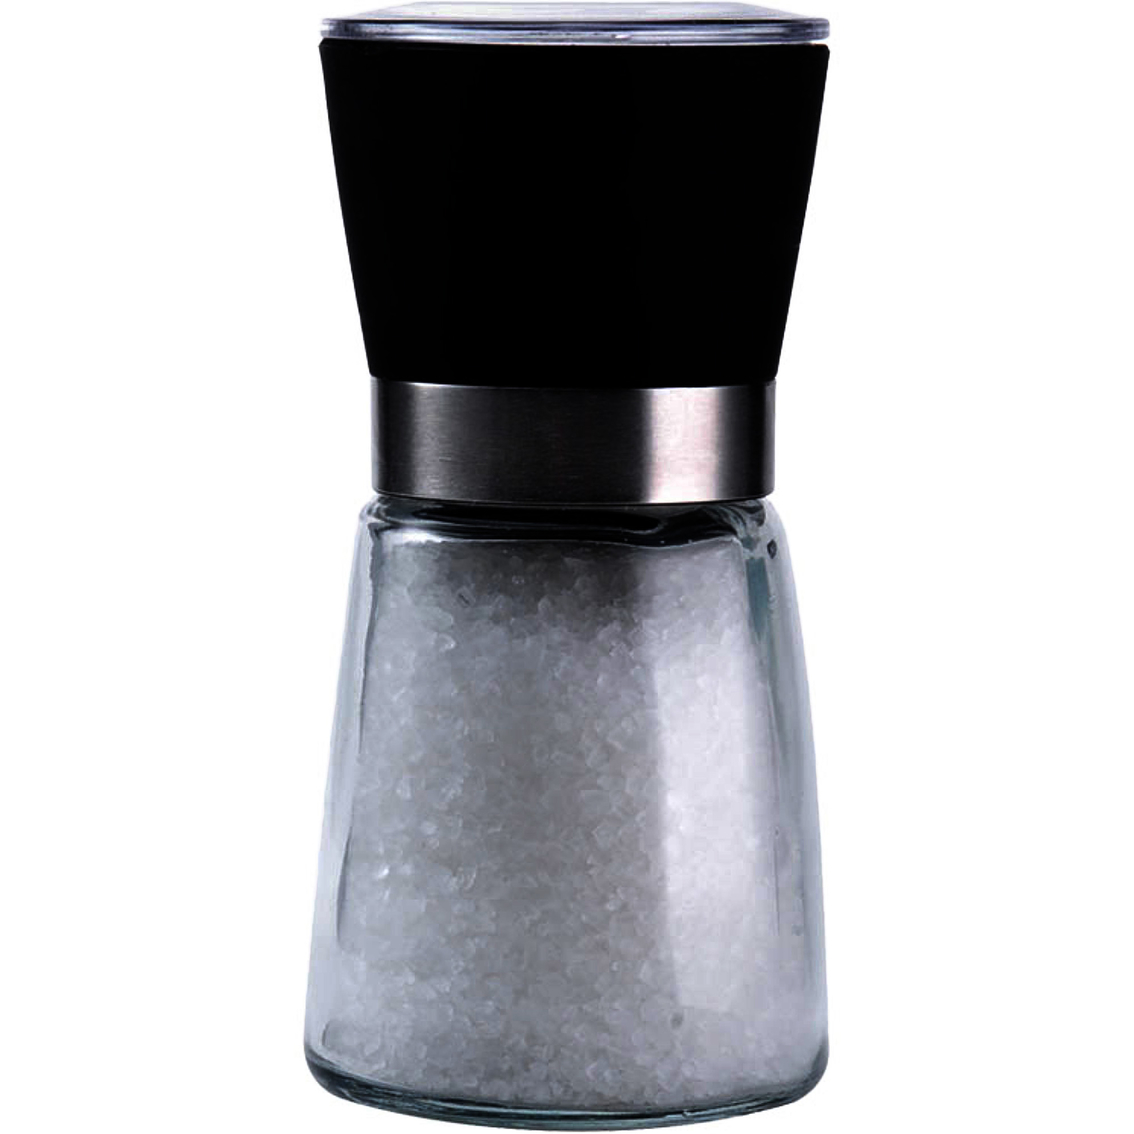 Kamenstein Glass Grinder with Salt